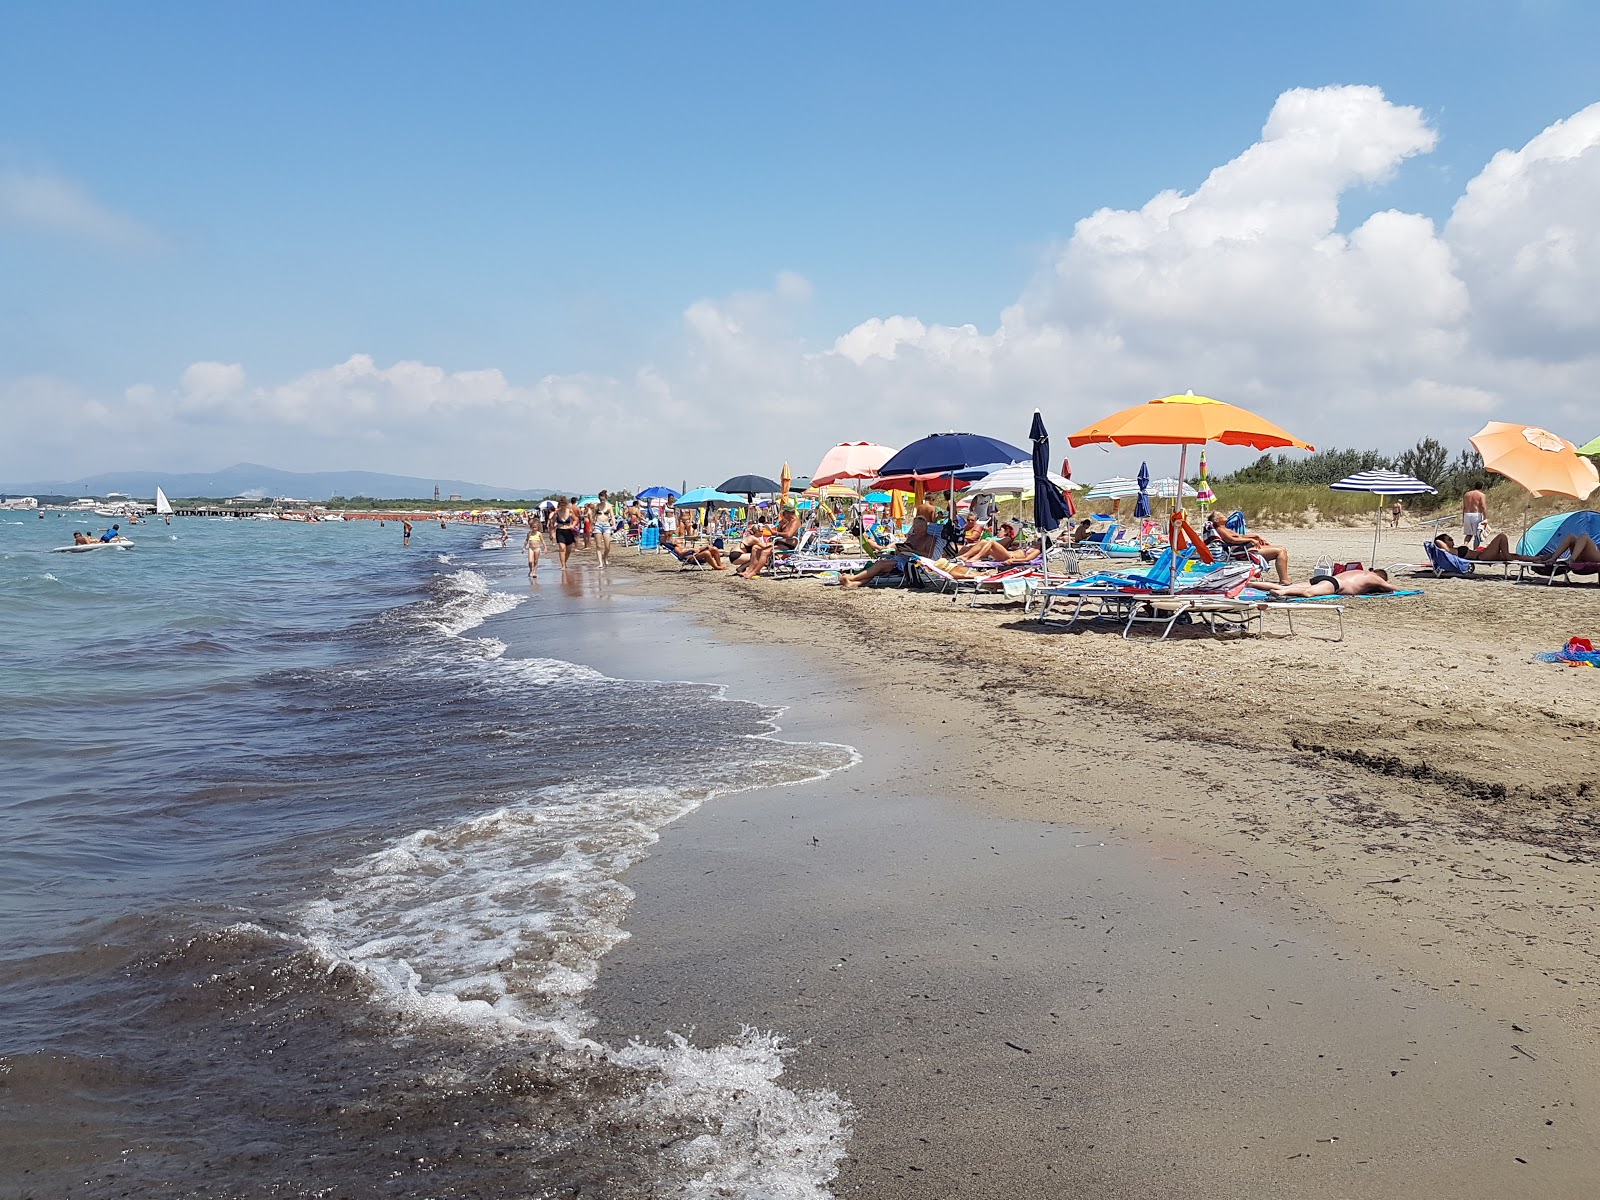 Fotografie cu Mazzanta beach cu o suprafață de nisip maro